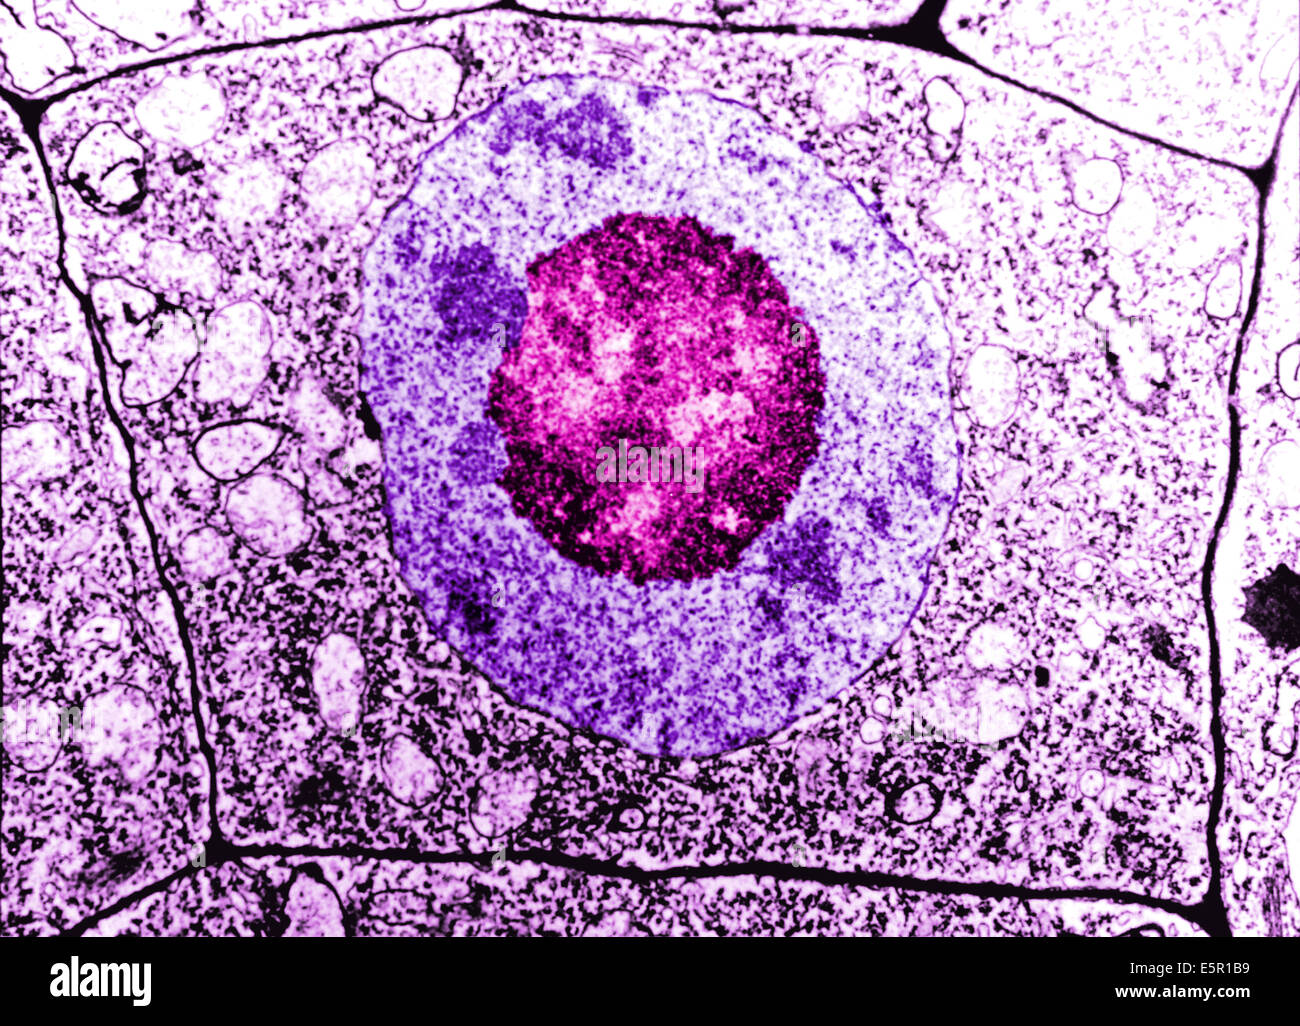 Elektronenmikroskopie der normalen menschlichen Zellen, die Zellmembran, Zellkern und der Nukleolus sind alle zu unterscheiden. Stockfoto